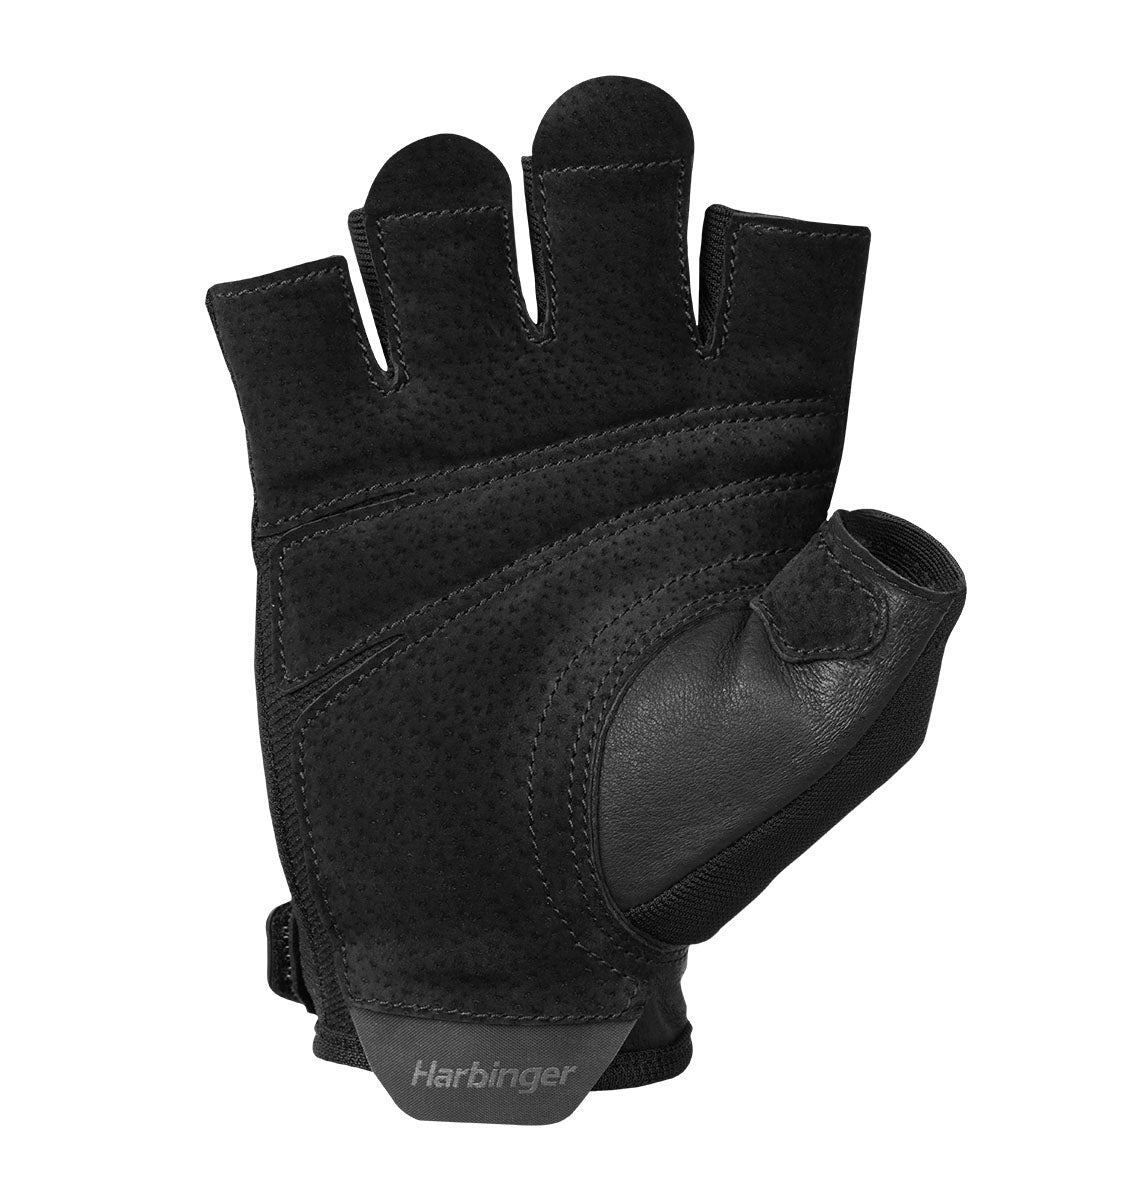 Harbinger Power Gloves 2.0 - Unisex - Black - 4